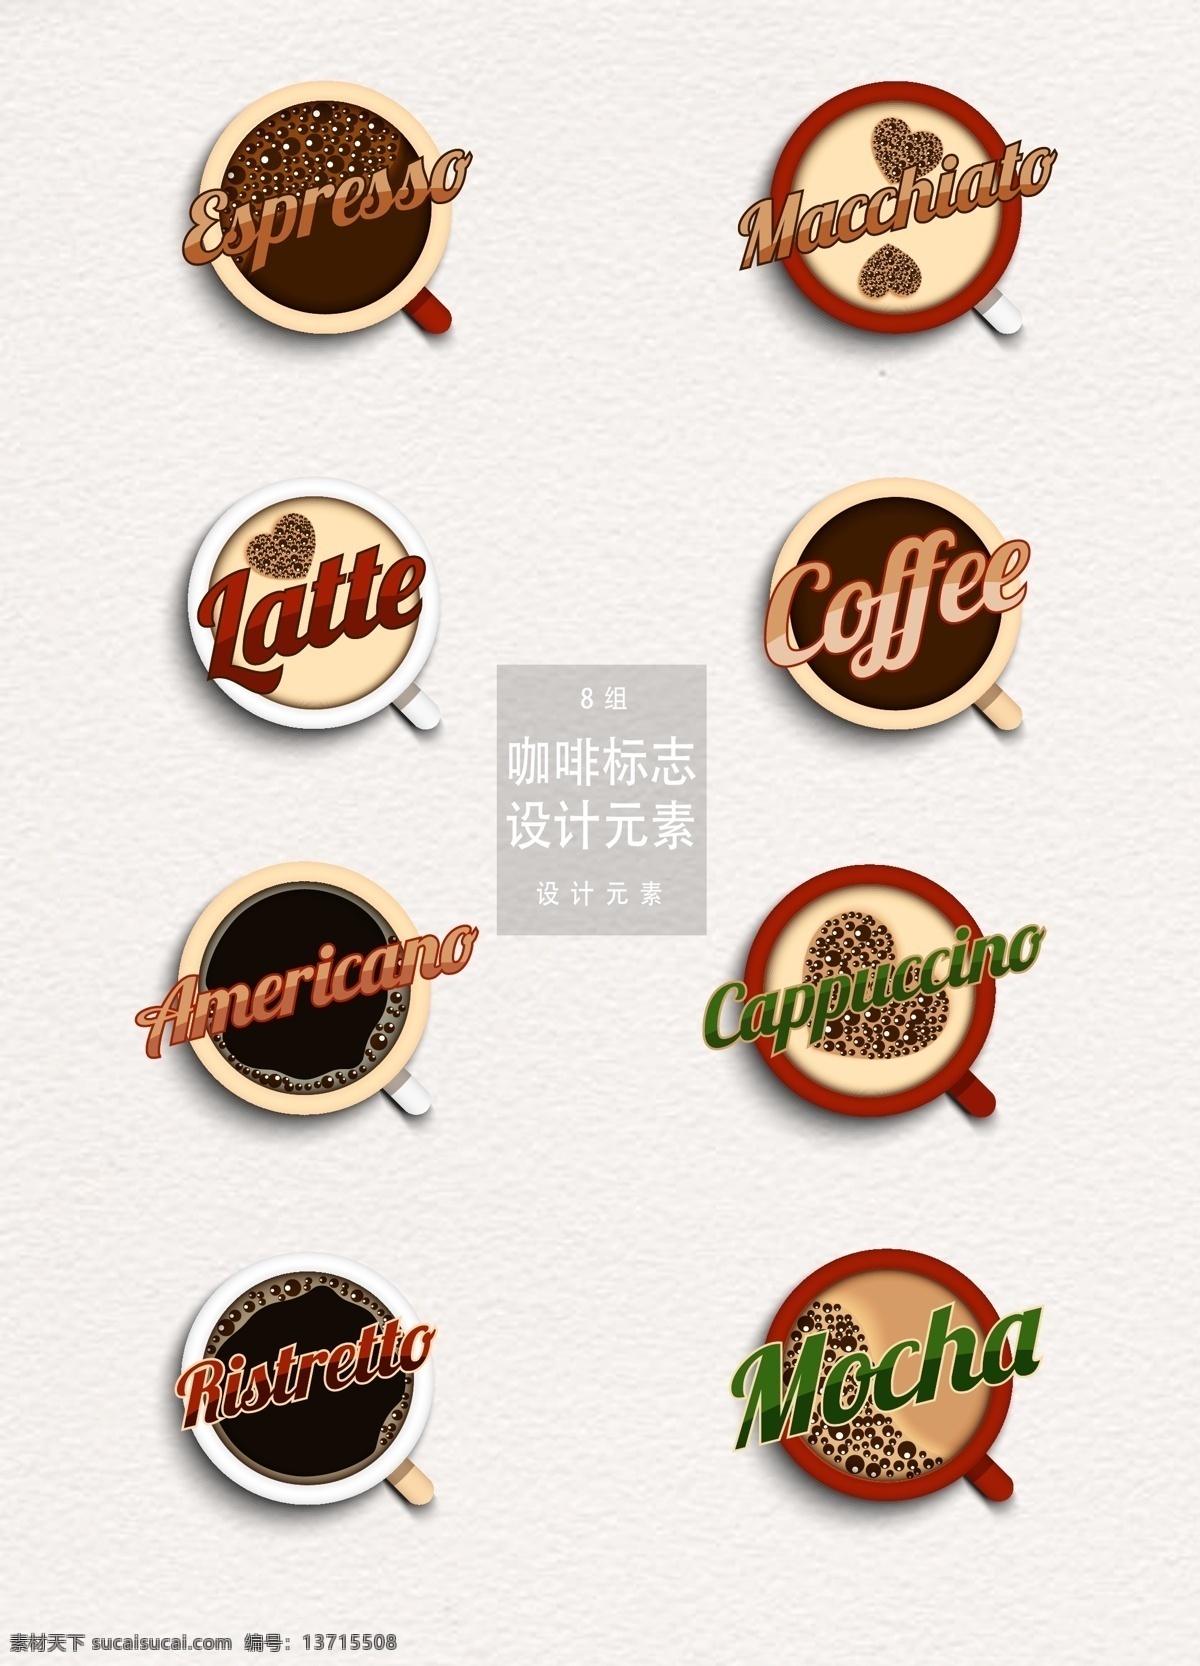 咖啡 标志 图标 元素 咖啡标志 咖啡图标 咖啡logo 矢量素材 茶杯 咖啡俯视图 俯视图